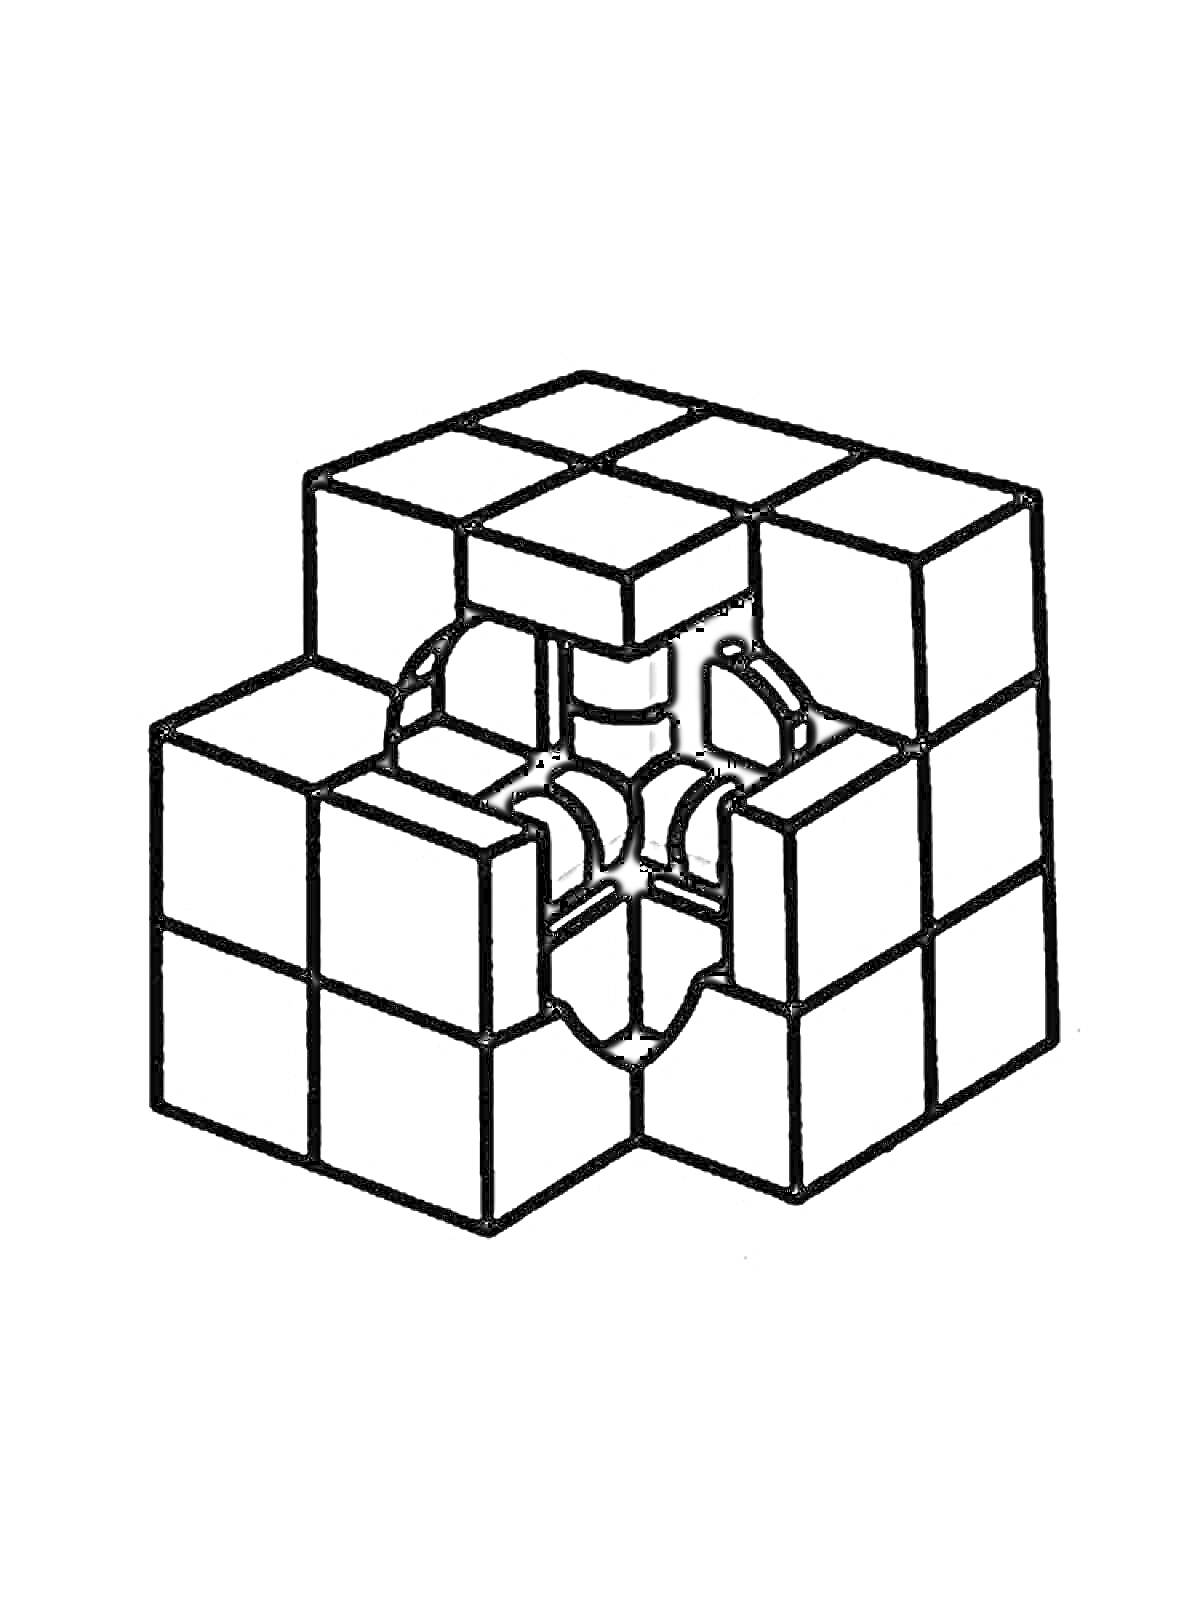 Кубик Рубика с раскрытыми элементами внутренней конструкции